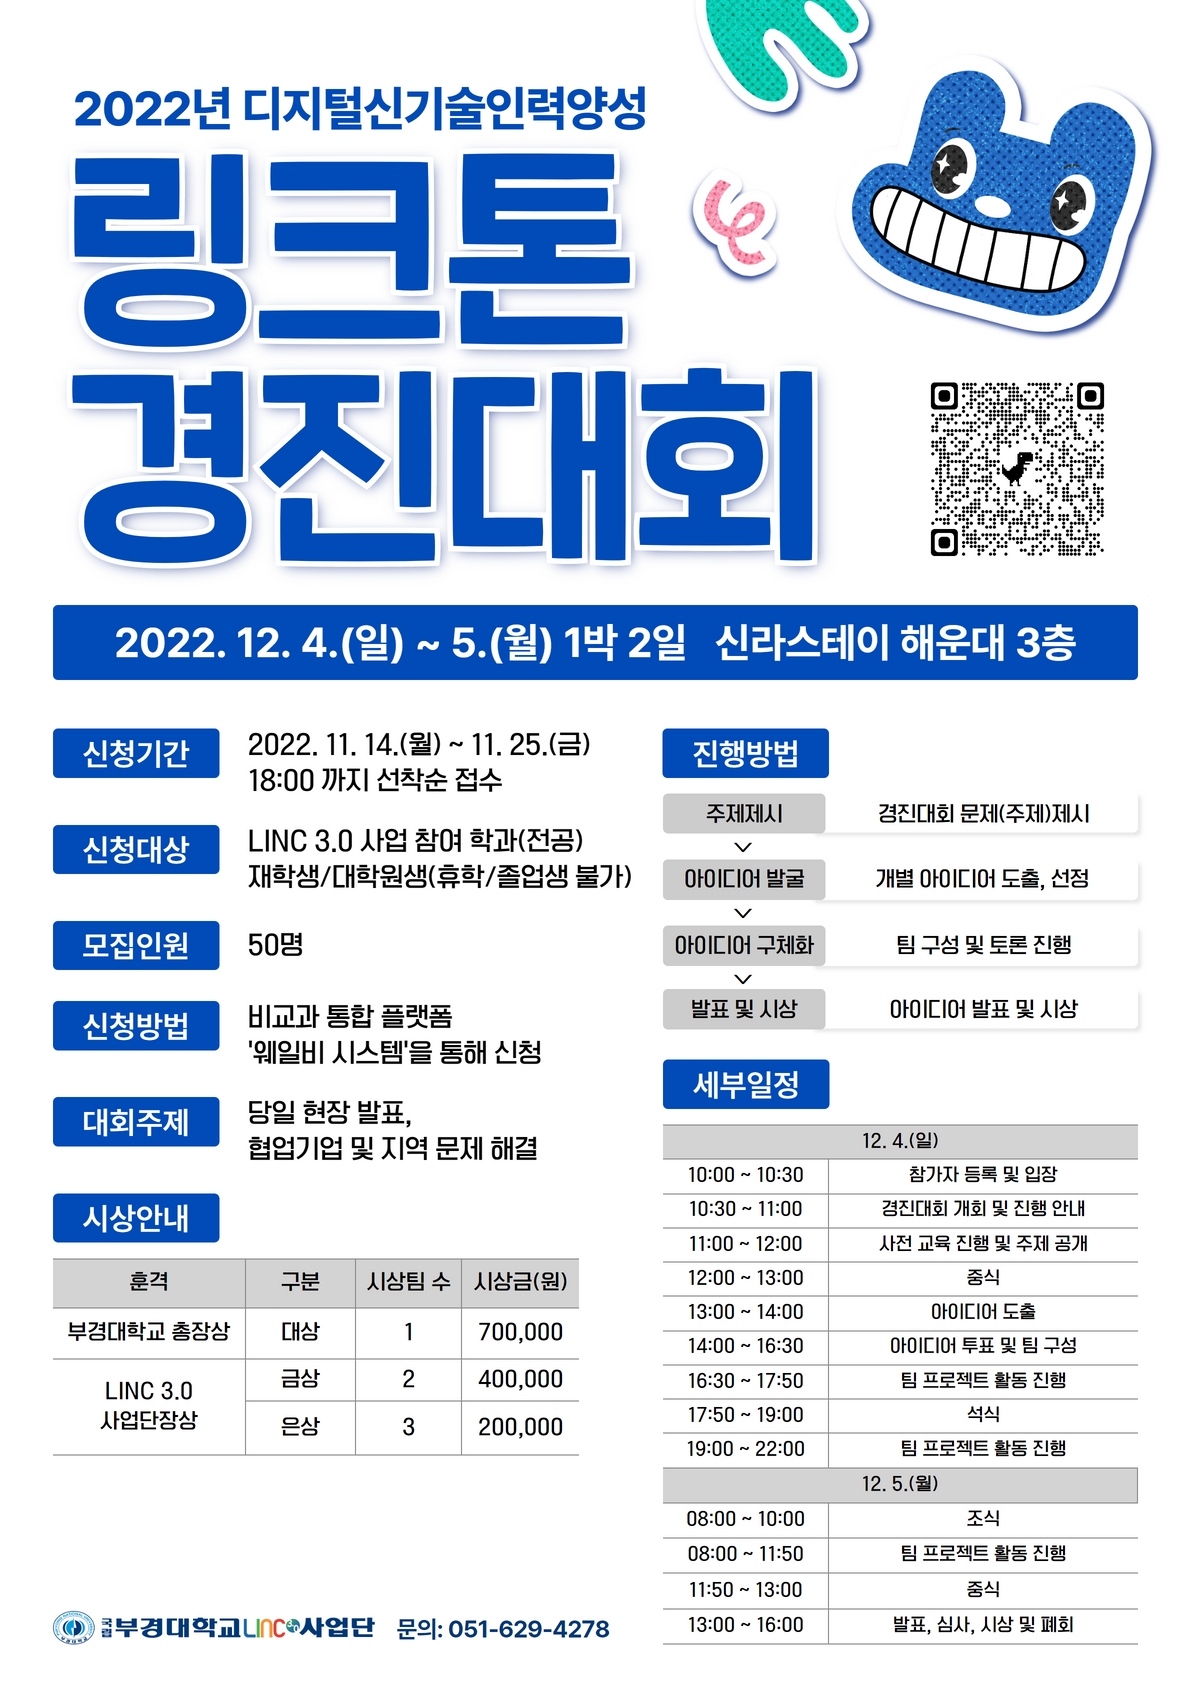 2022년 링크톤 경진대회 정보(포스터)